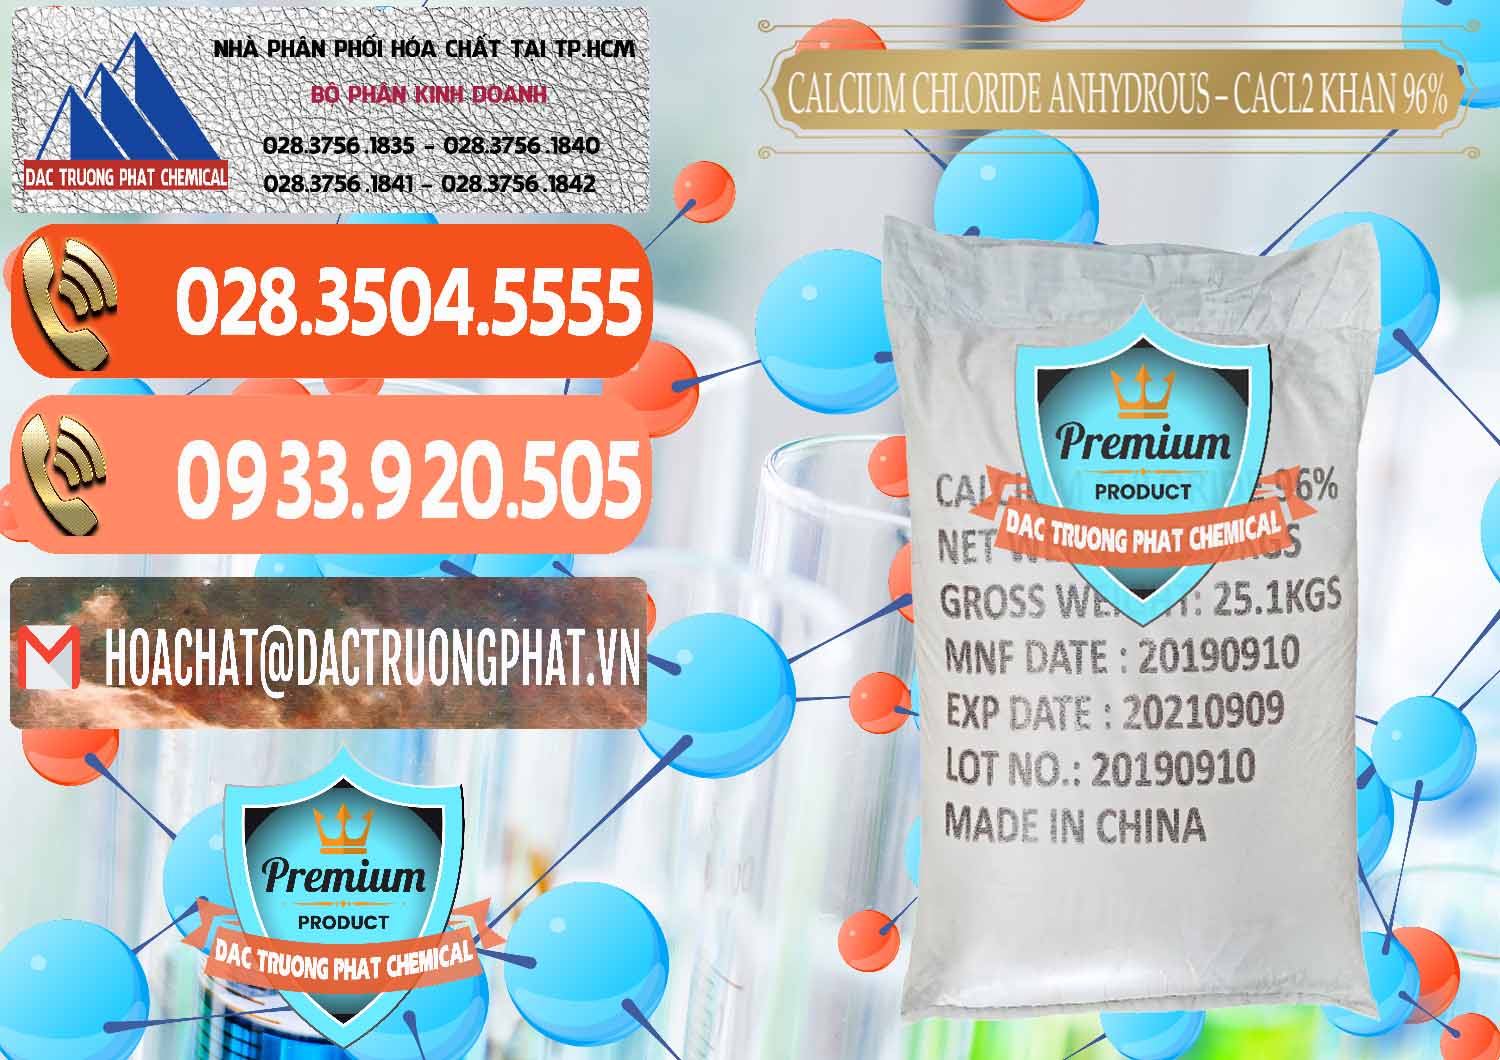 Công ty bán và cung ứng CaCl2 – Canxi Clorua Anhydrous Khan 96% Trung Quốc China - 0043 - Cty bán _ phân phối hóa chất tại TP.HCM - hoachatmientay.com